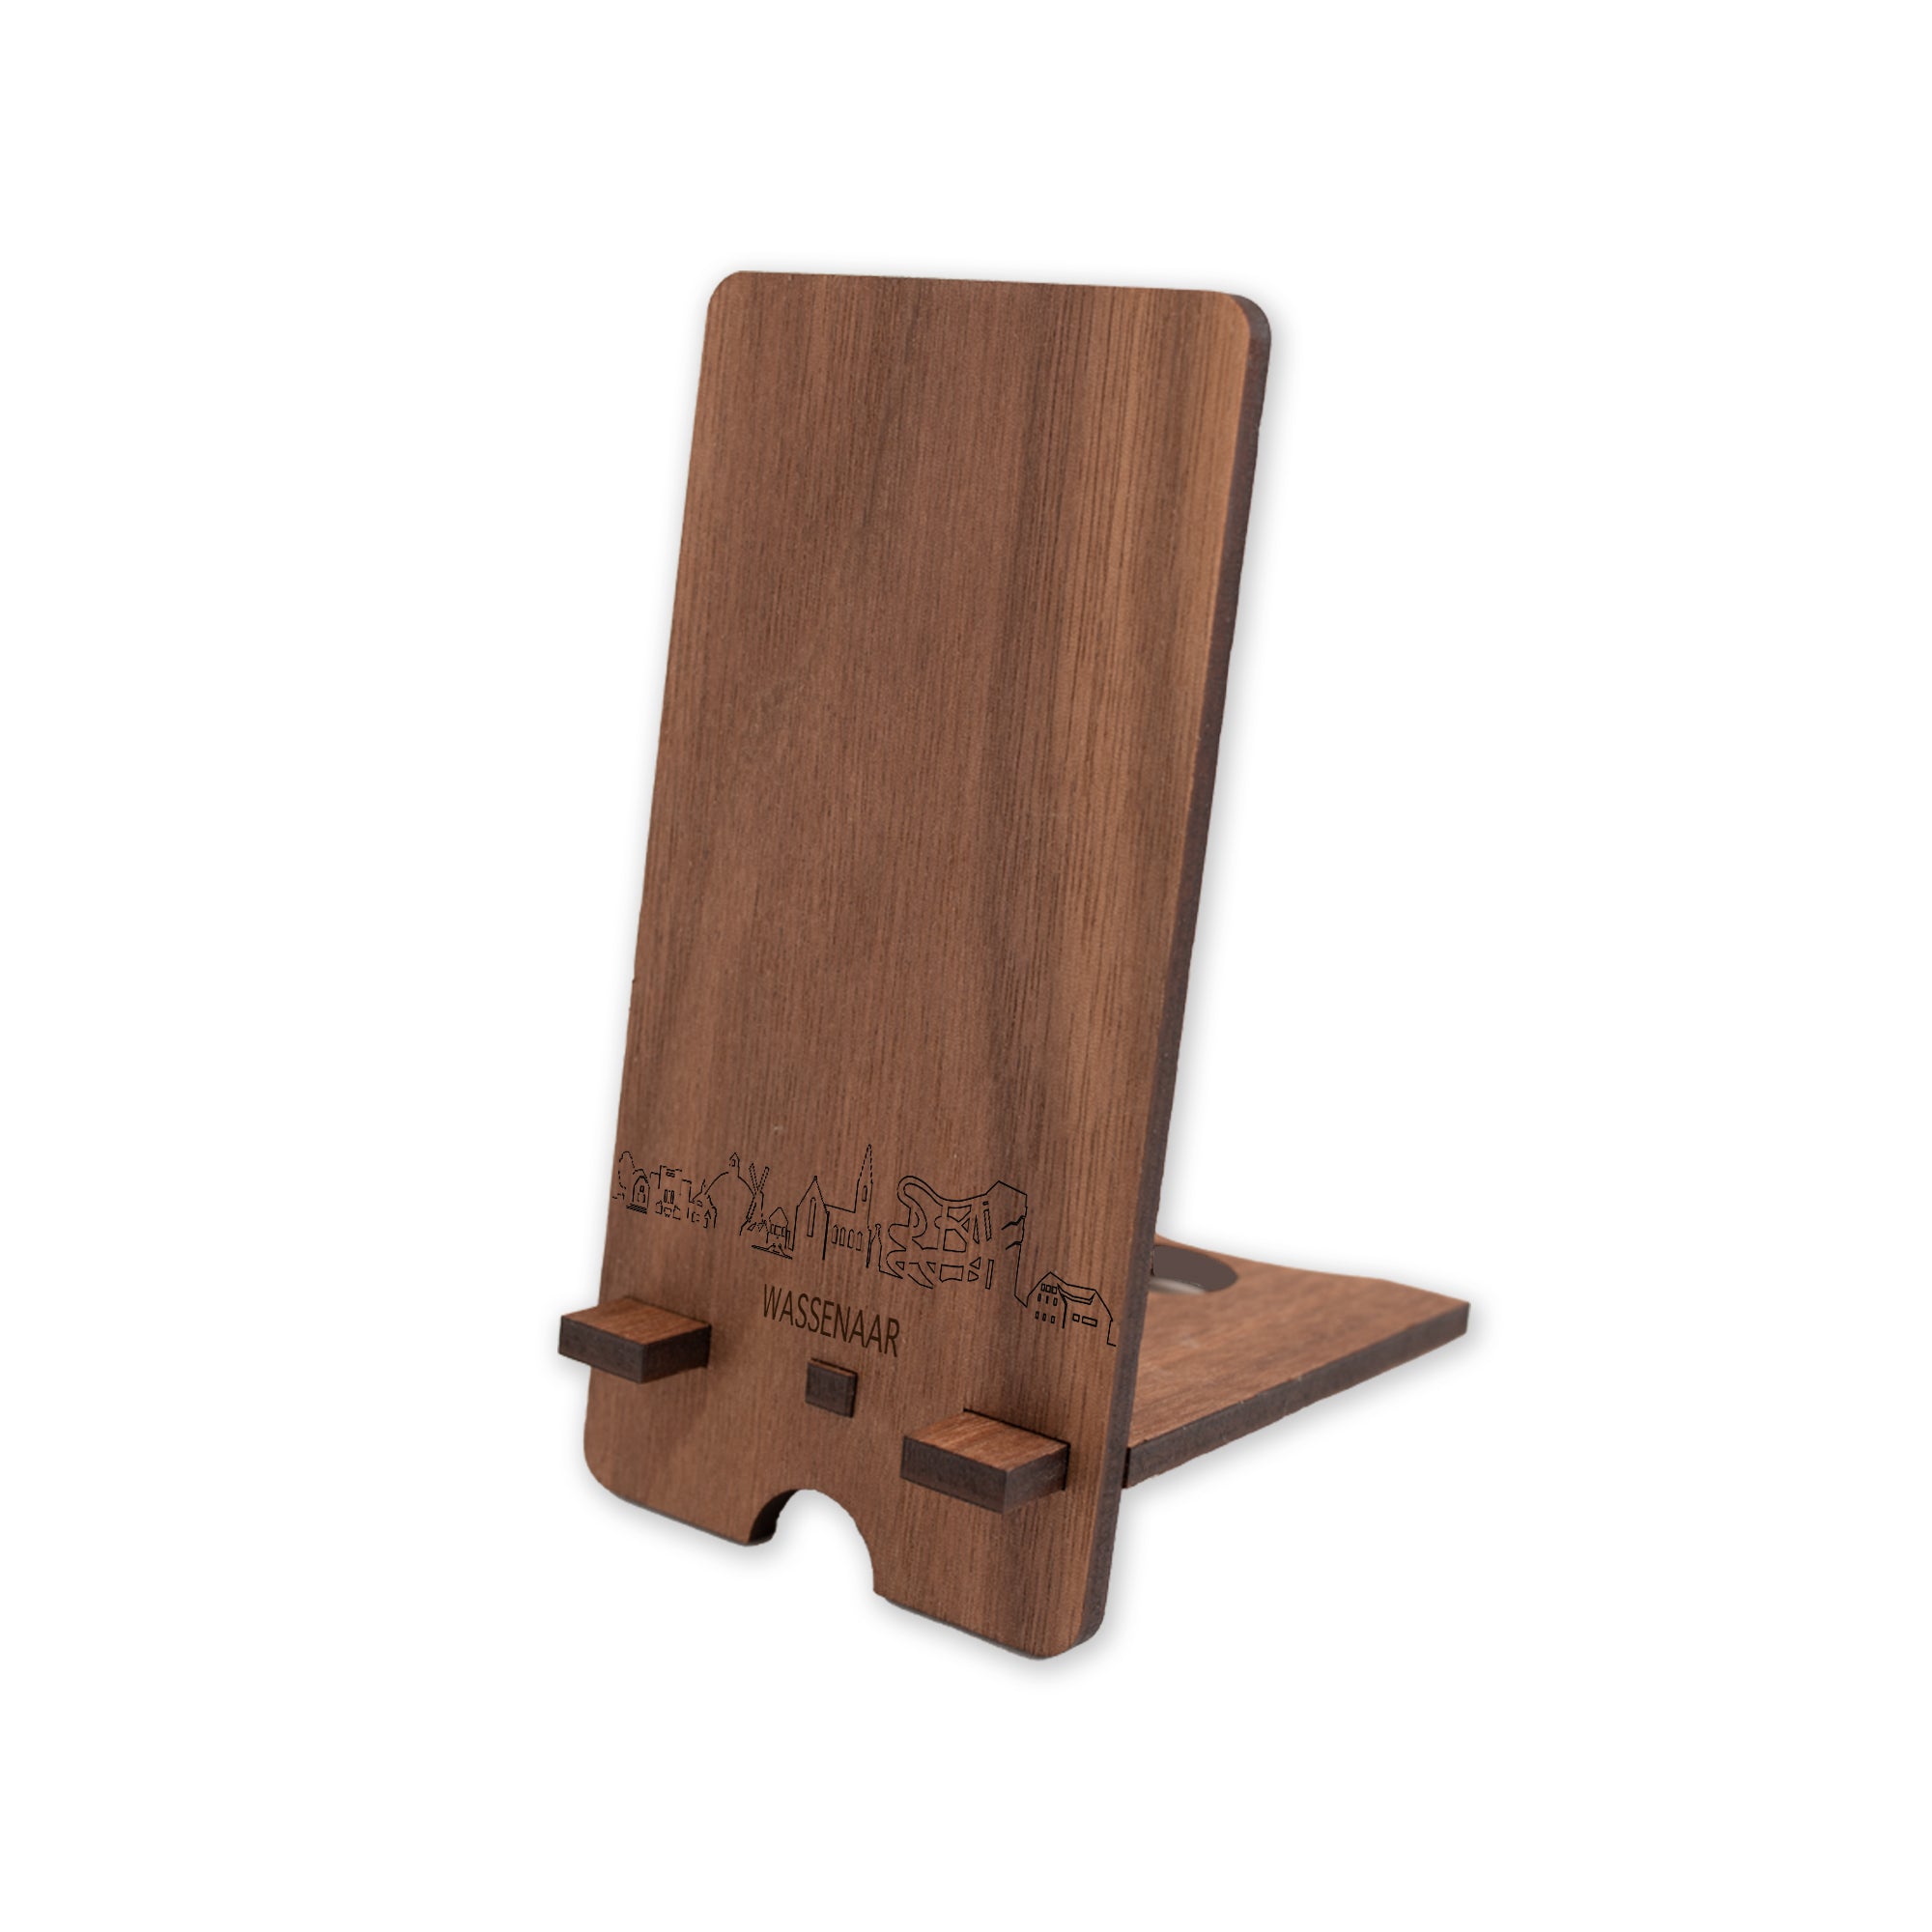 Skyline Telefoonhouder Wassenaar houten cadeau decoratie relatiegeschenk van WoodWideCities